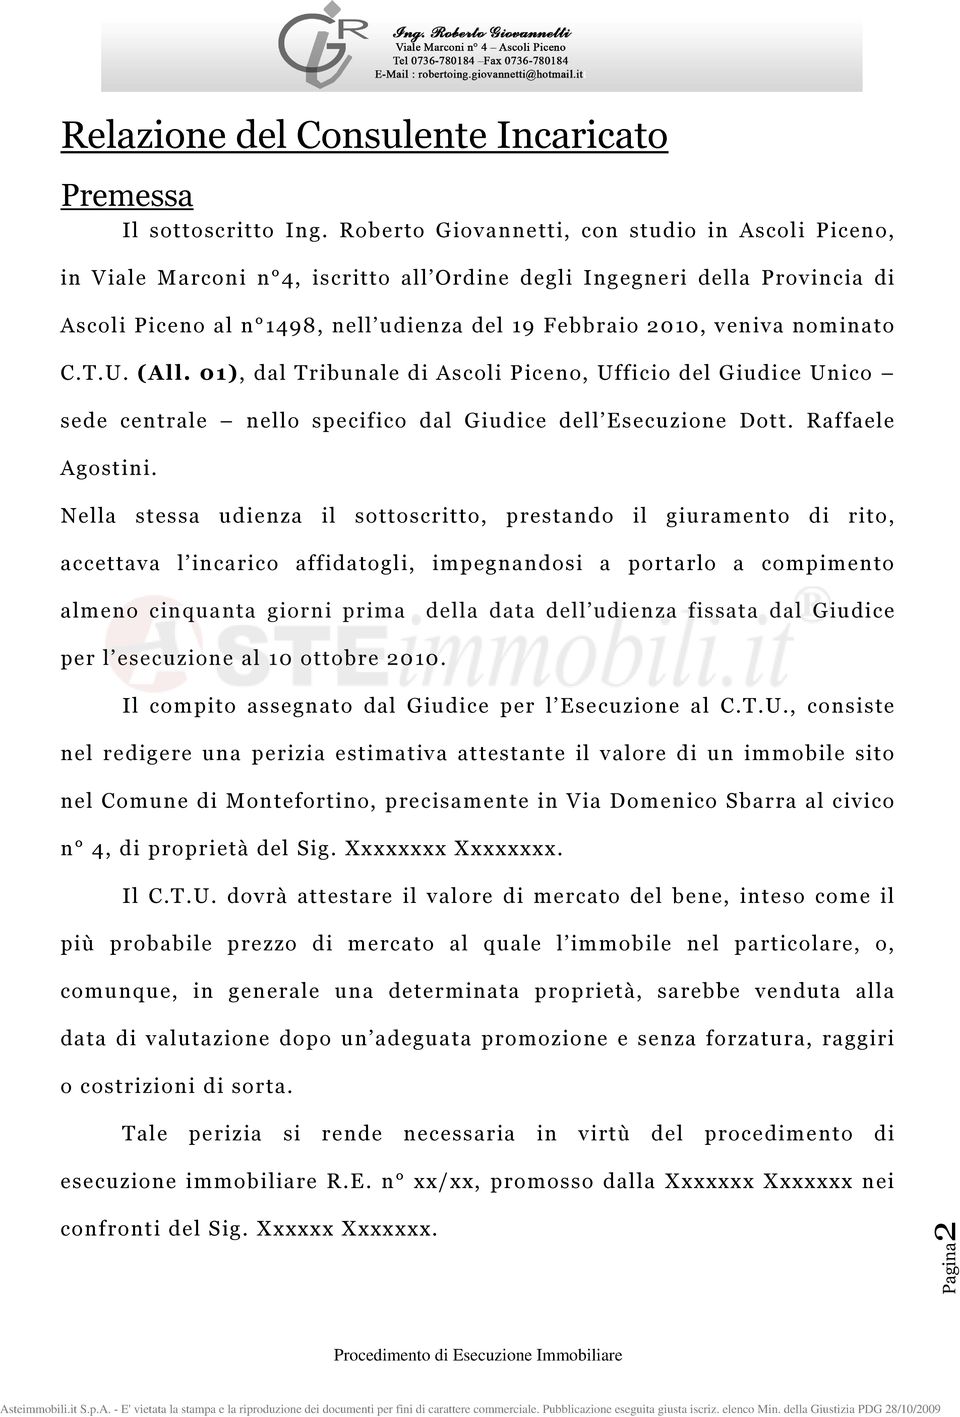 nominato C.T.U. (All. 01), dal Tribunale di Ascoli Piceno, Ufficio del Giudice Unico sede centrale nello specifico dal Giudice dell Esecuzione Dott. Raffaele Agostini.